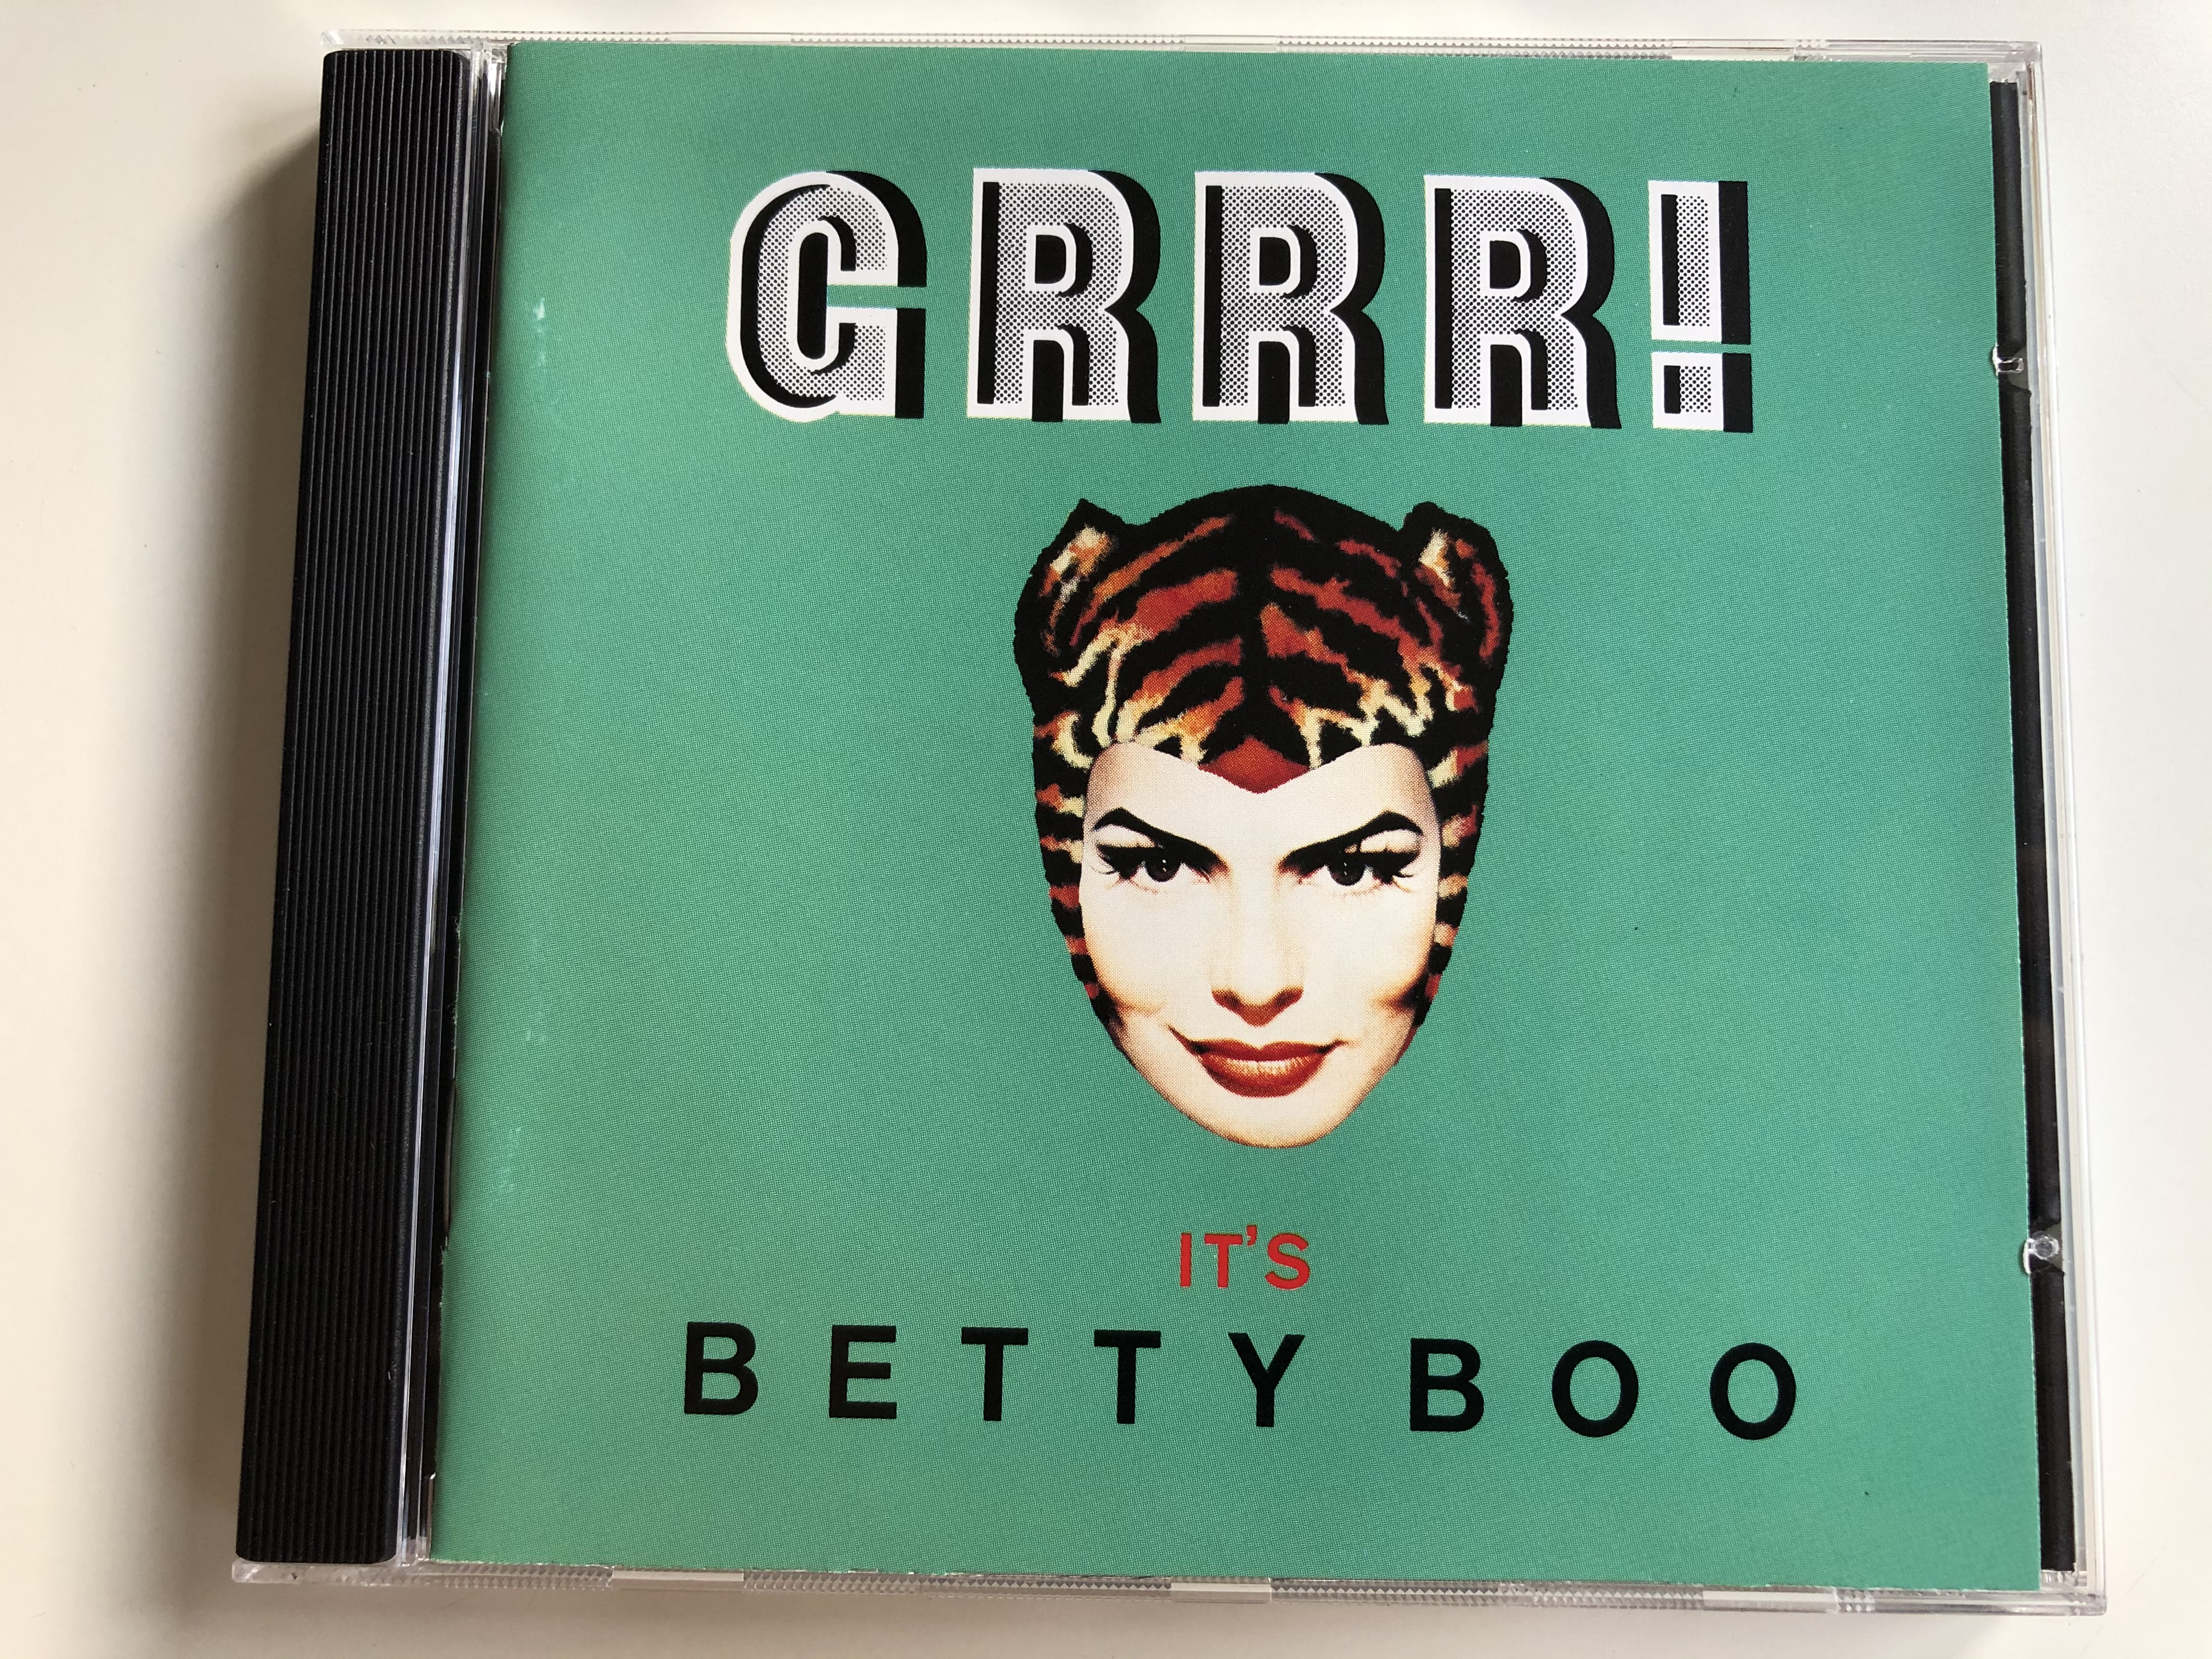 grrr-it-s-betty-boo-wea-audio-cd-1992-4509-90908-2-1-.jpg